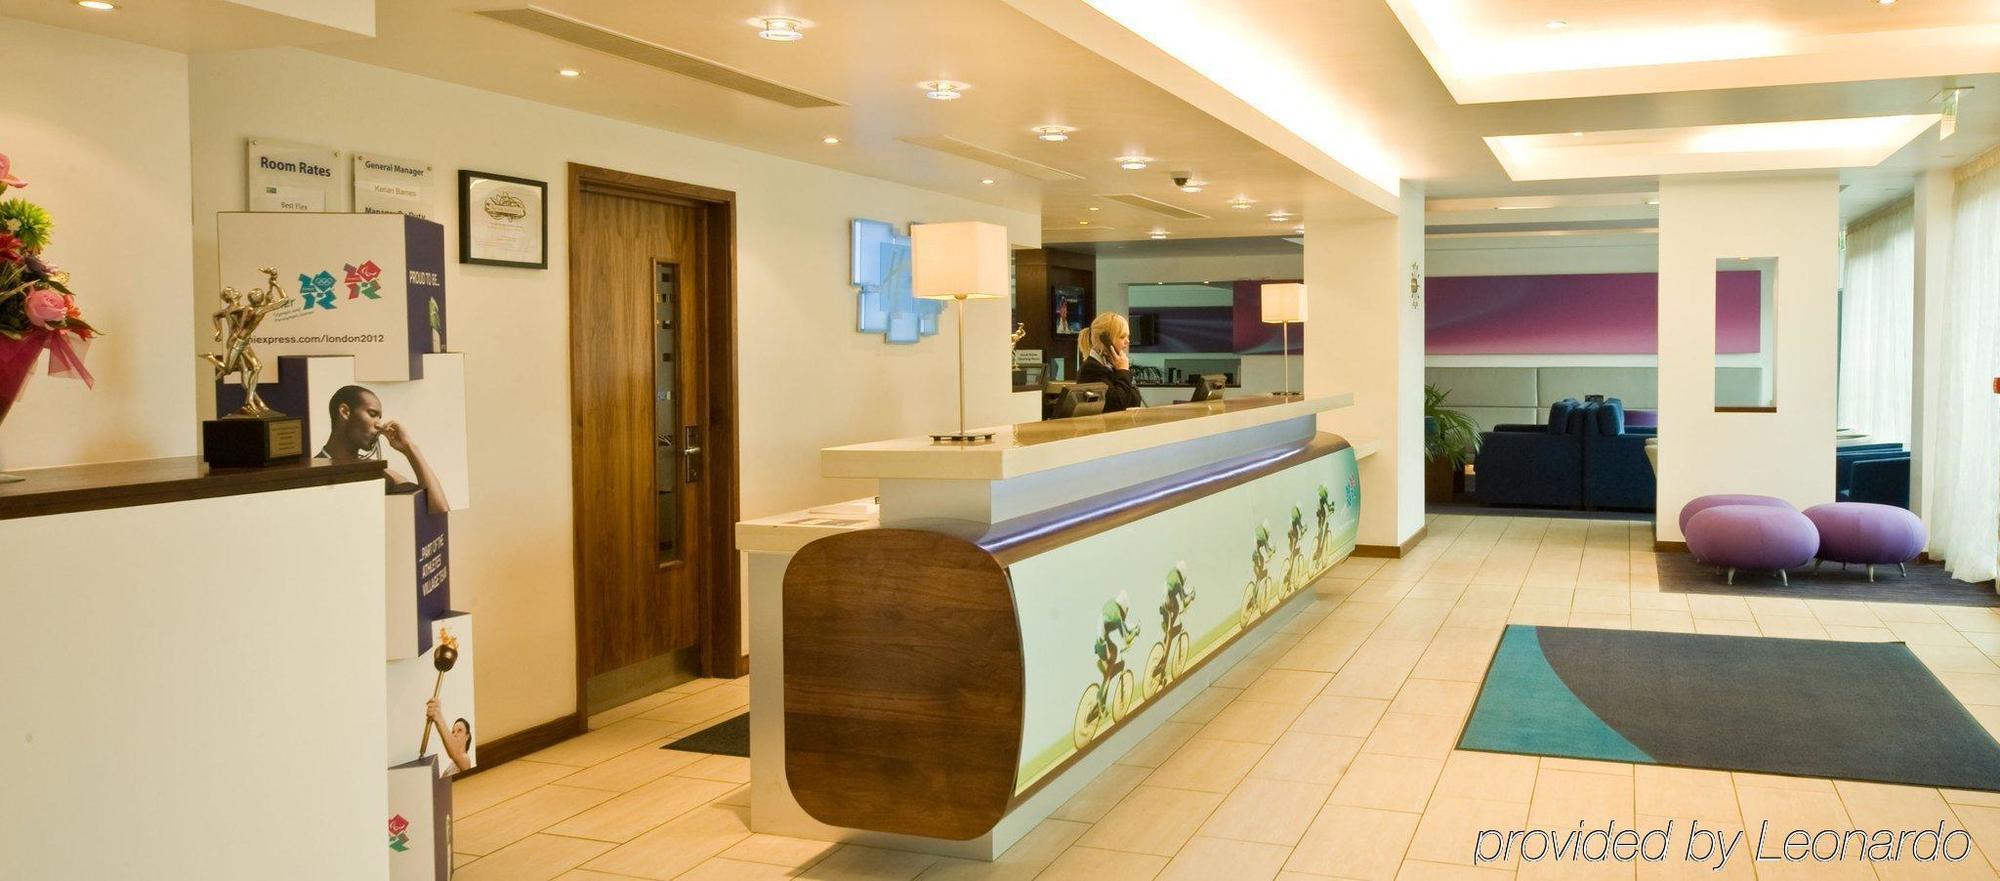 Holiday Inn Express Burnley M65 Jct 10, An Ihg Hotel Exterior foto